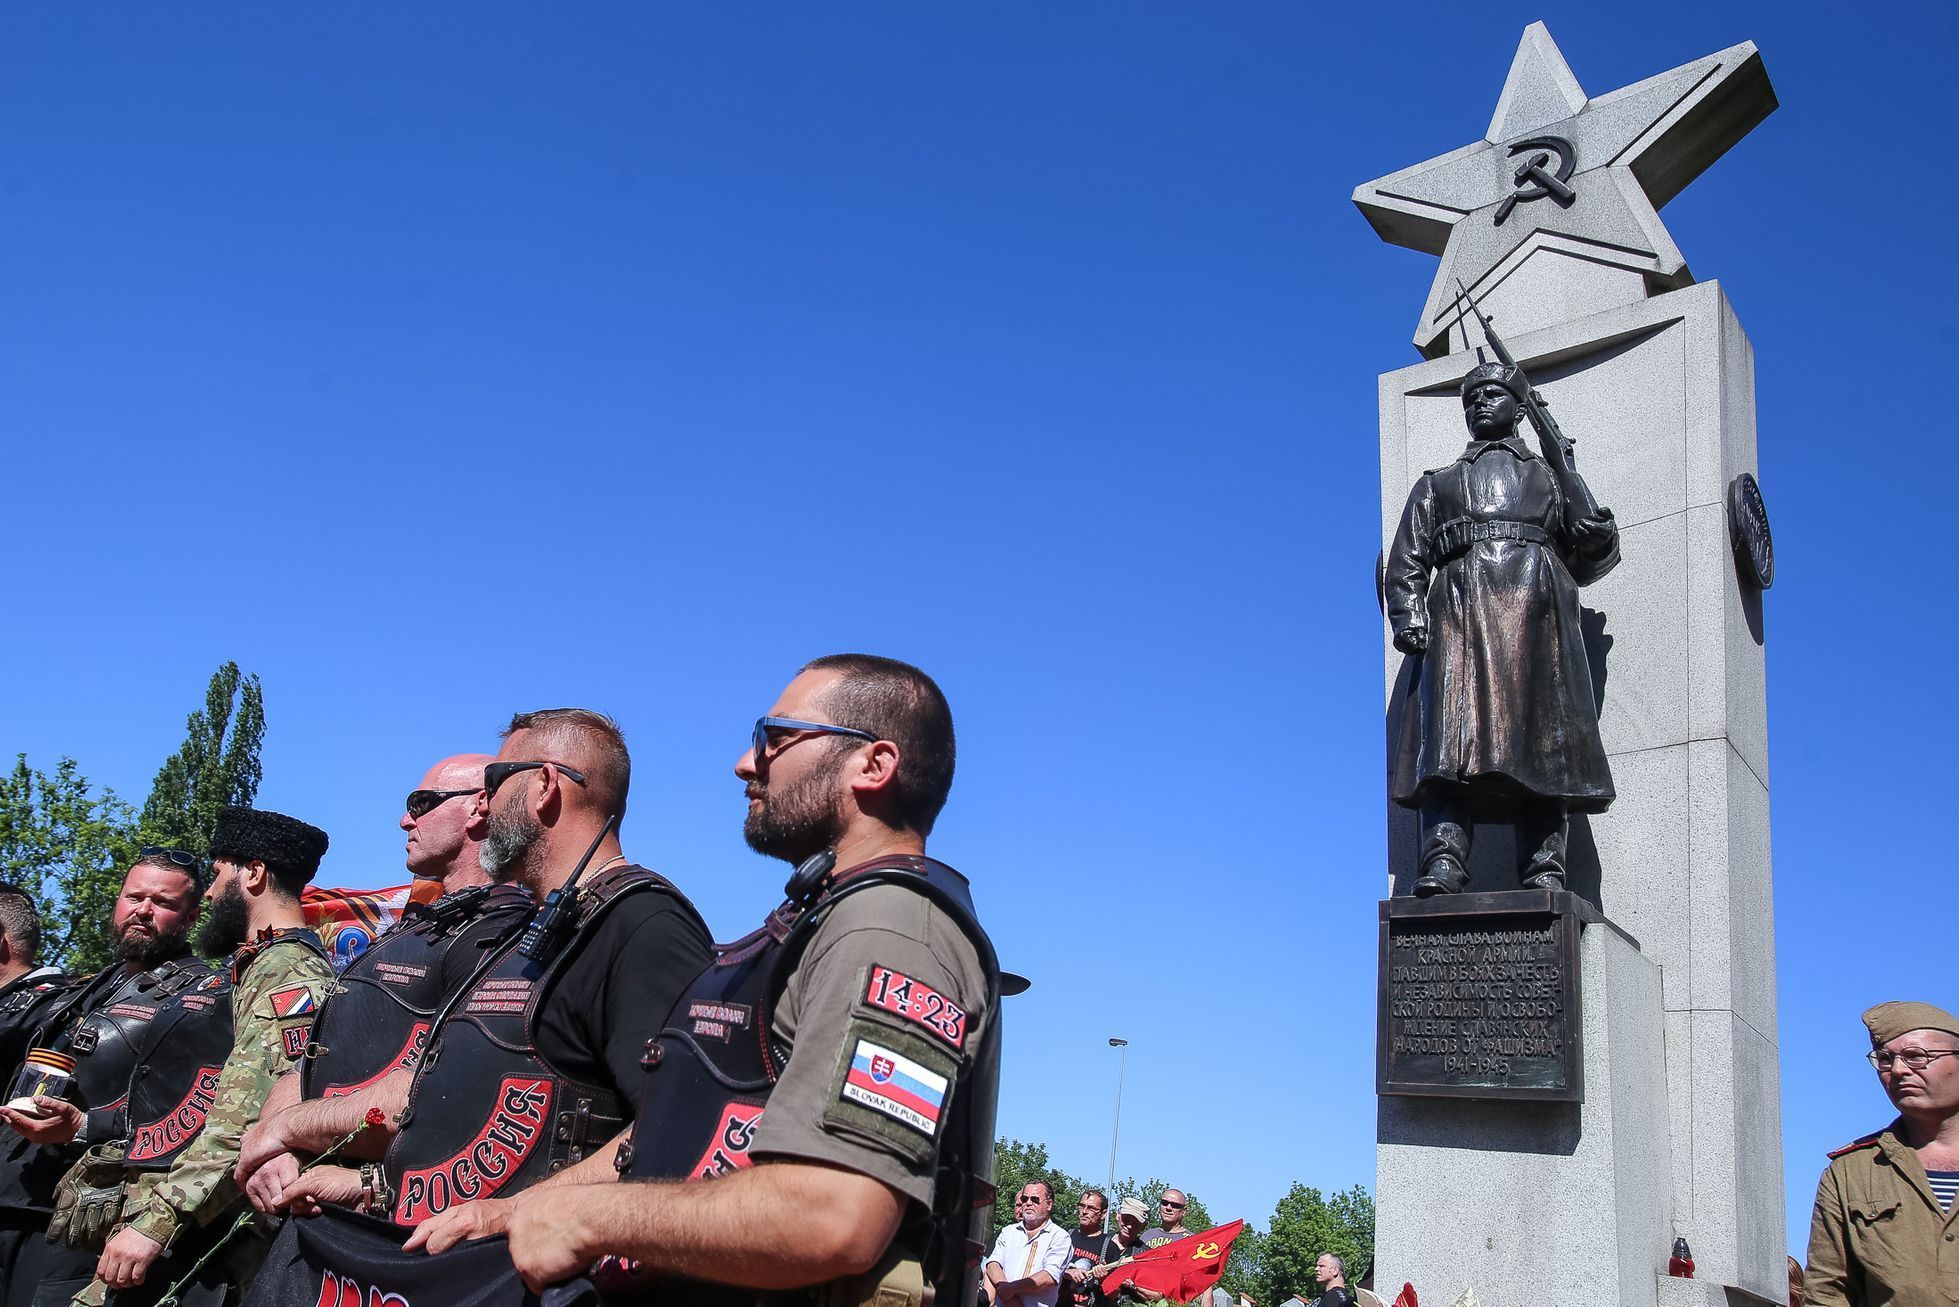 Noční vlci přijeli do Prahy na Olšanské hřbitovy - zde čekali příznivci i odpůrci